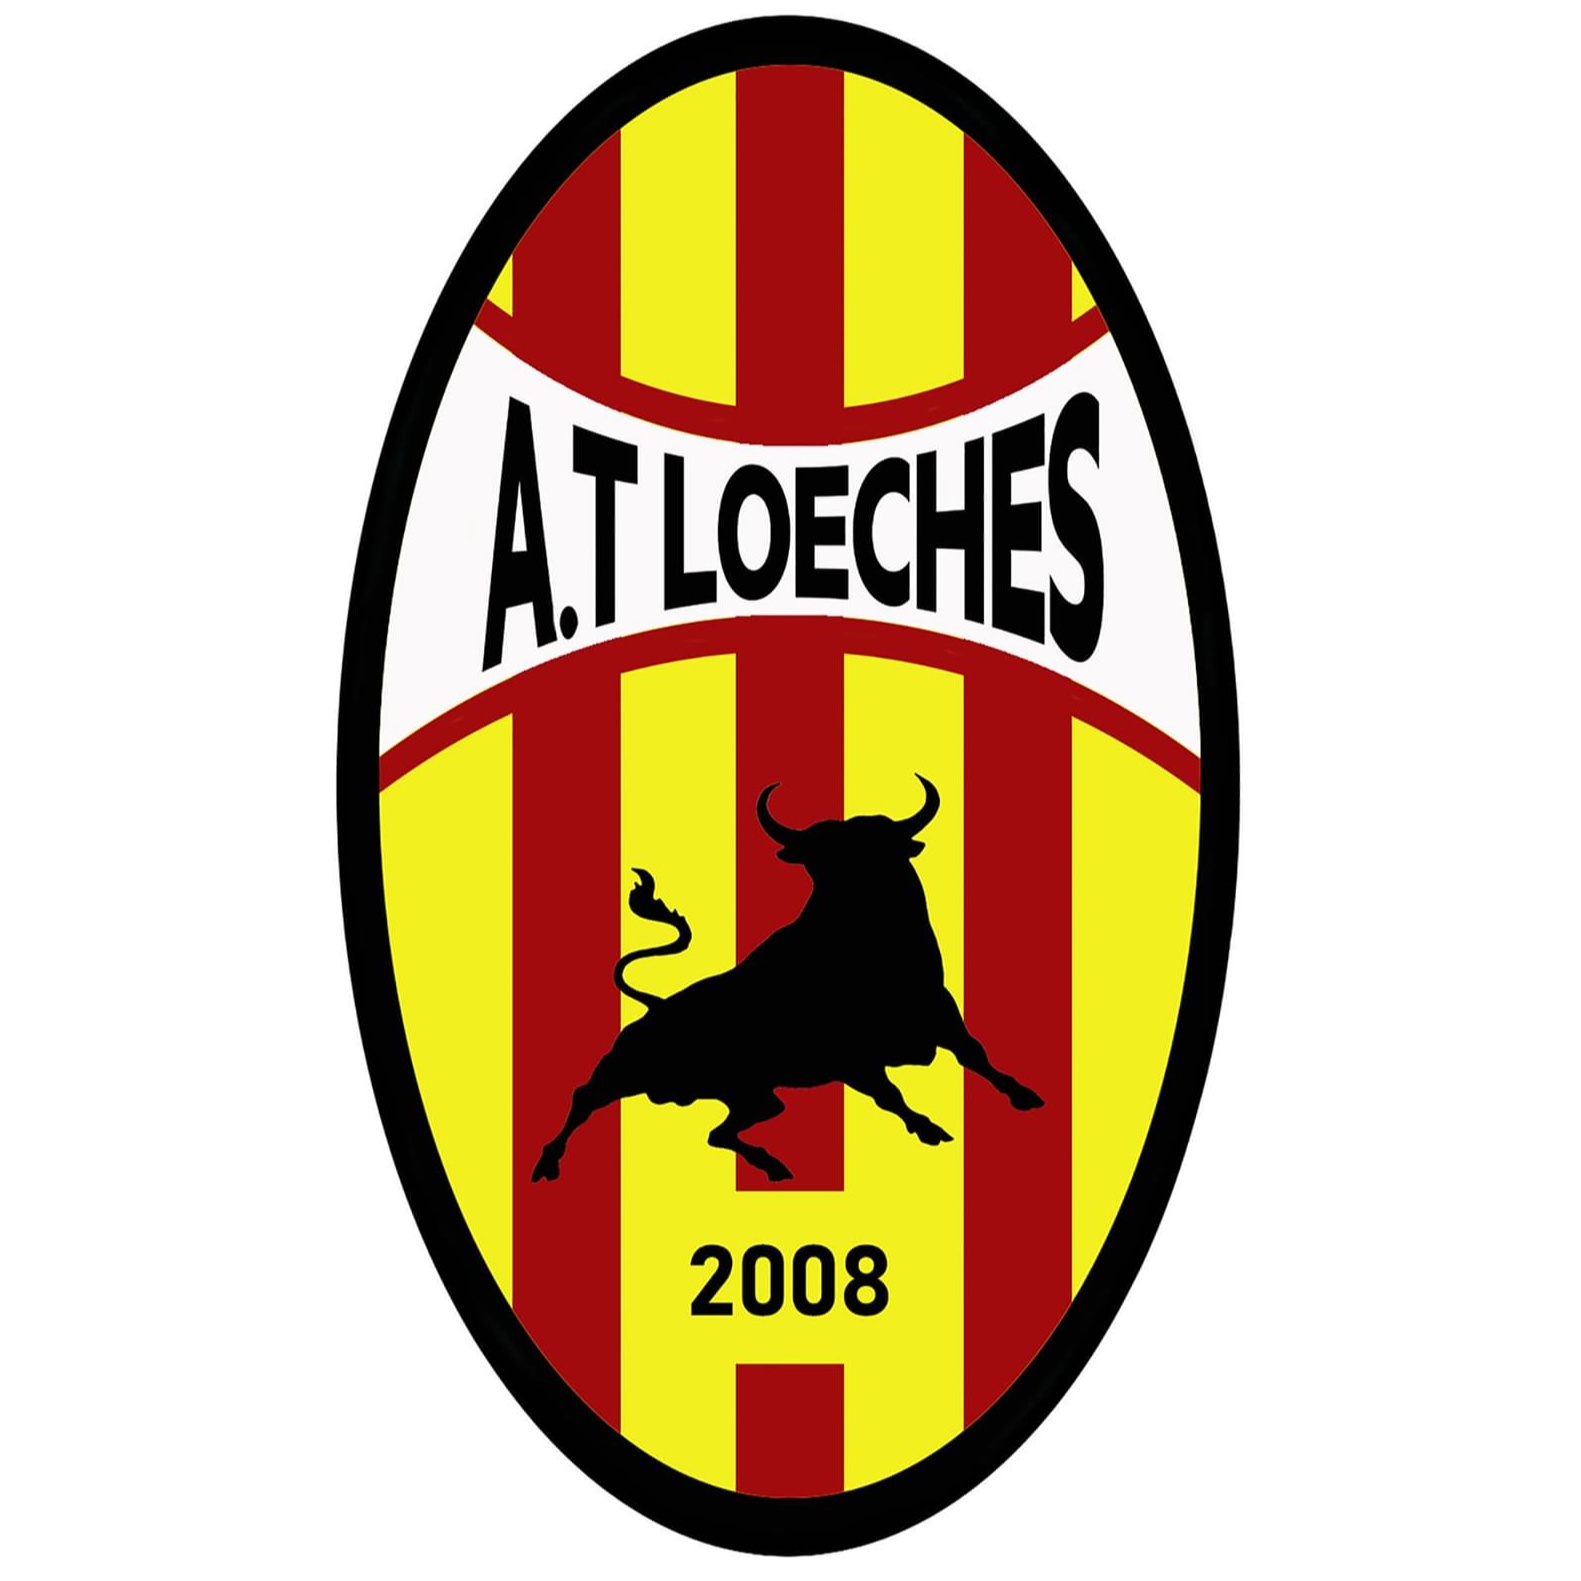 Atlético Loeches B